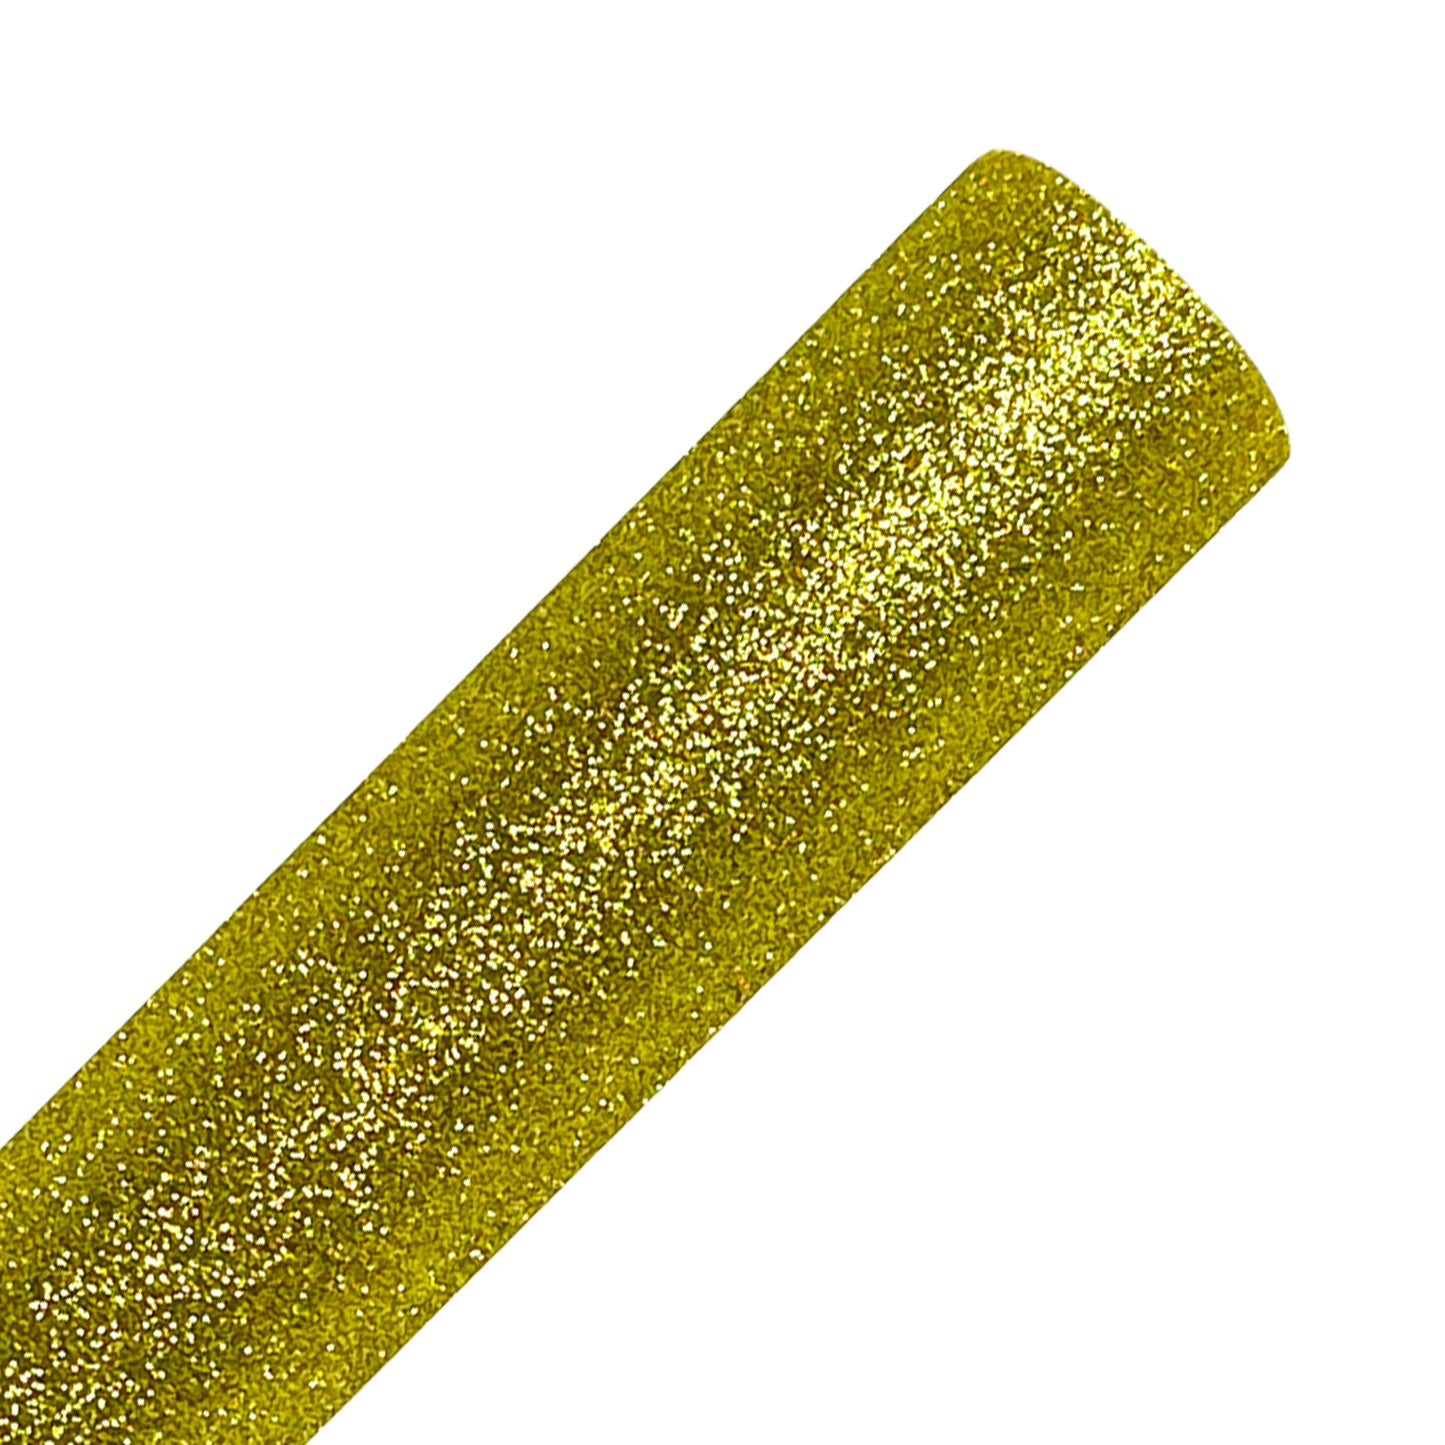 Light Gold Glitter Heat Transfer Vinyl Rolls By Craftables